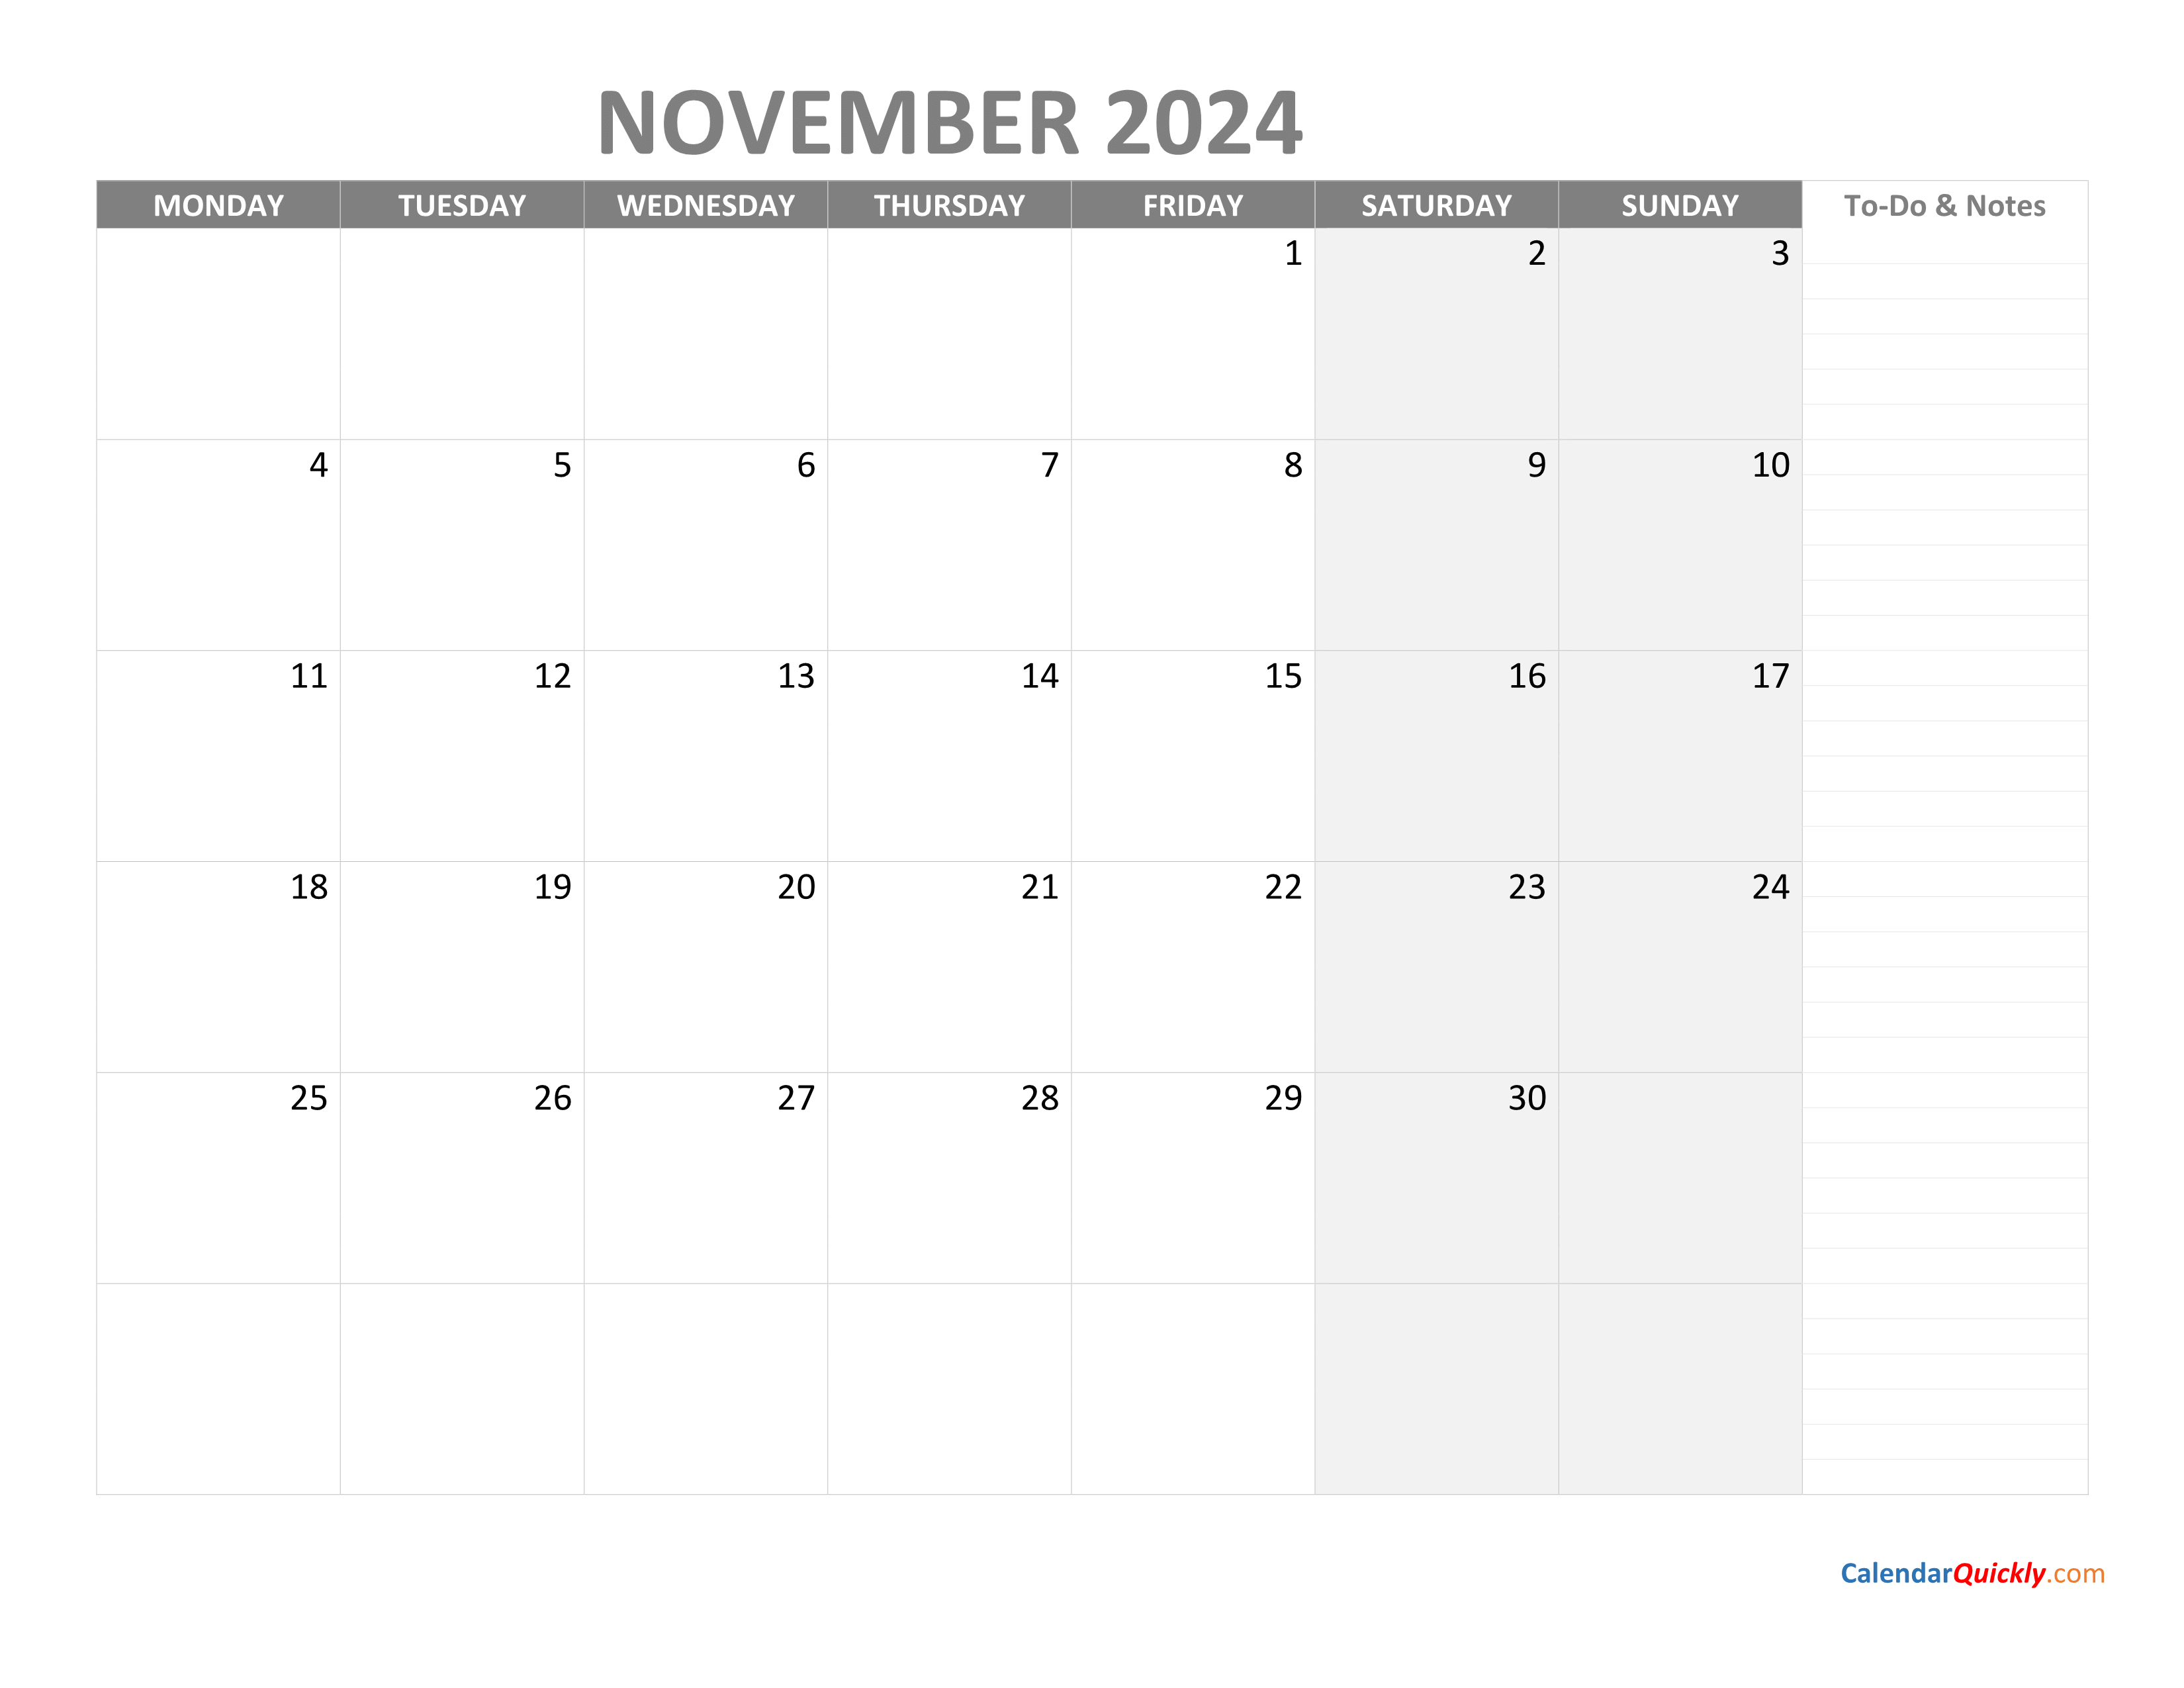 November Monday Calendar 2024 With Notes Calendar Quickly